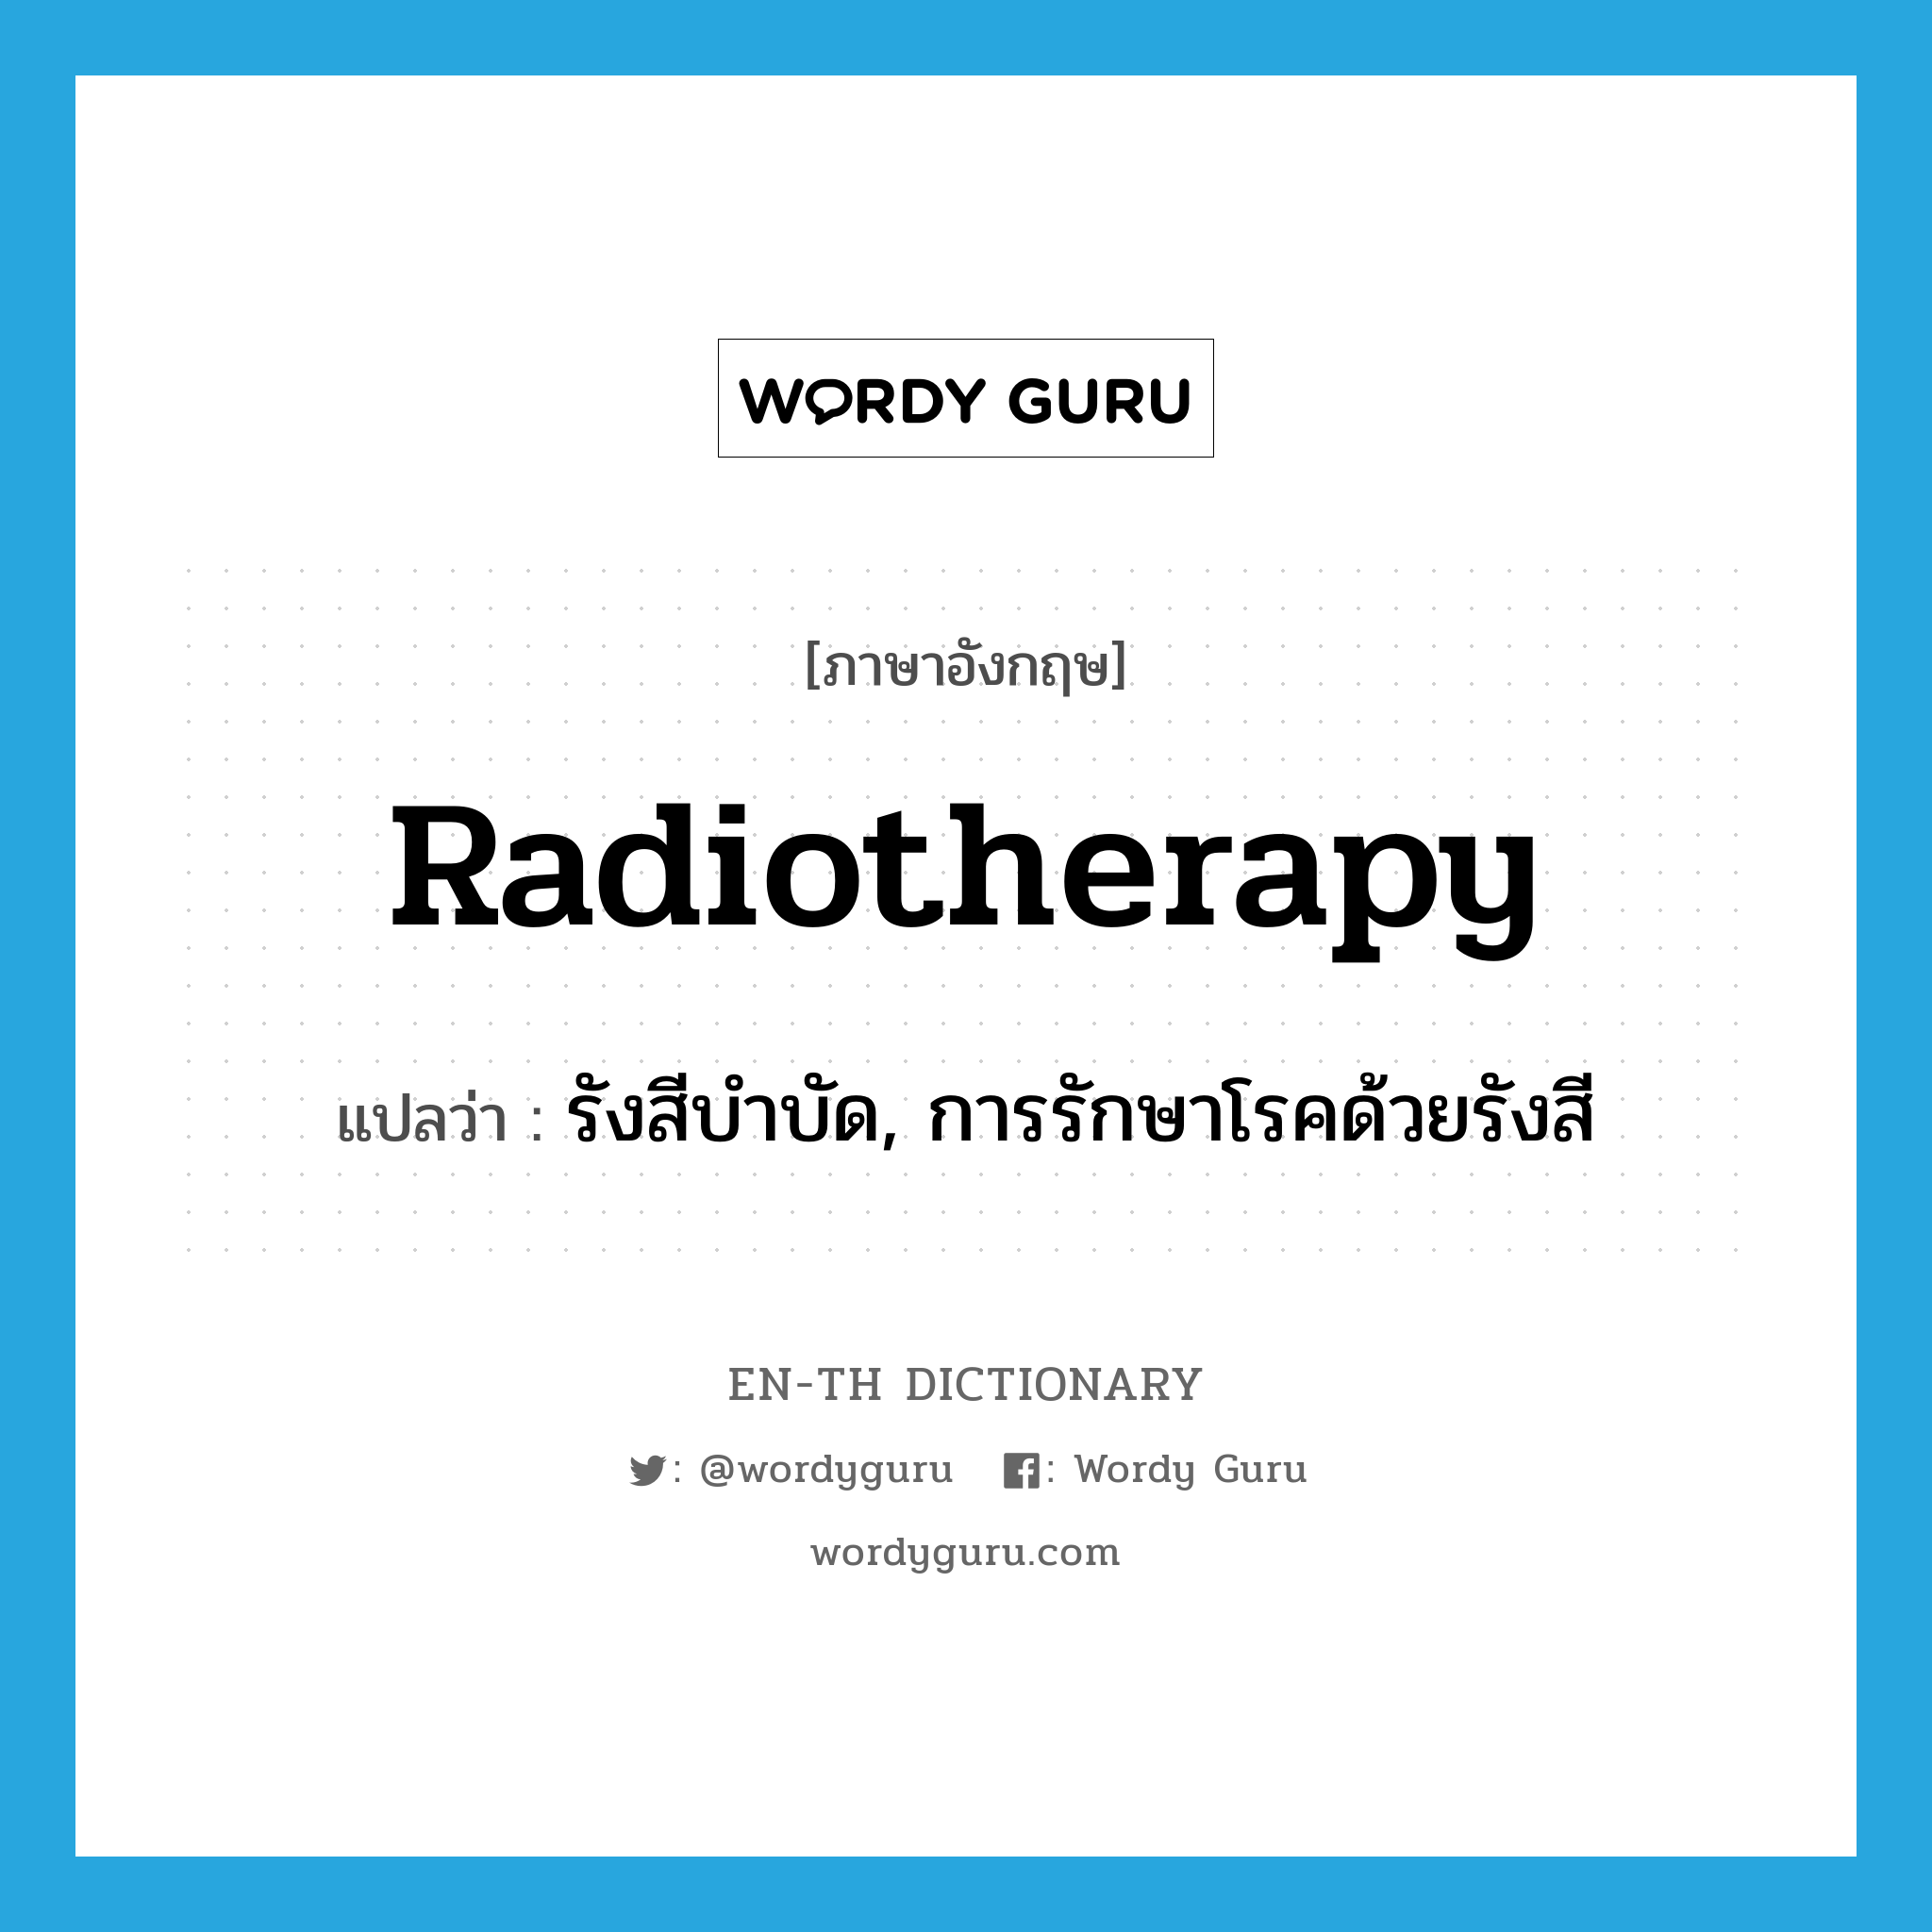 radiotherapy แปลว่า?, คำศัพท์ภาษาอังกฤษ radiotherapy แปลว่า รังสีบำบัด, การรักษาโรคด้วยรังสี ประเภท N หมวด N